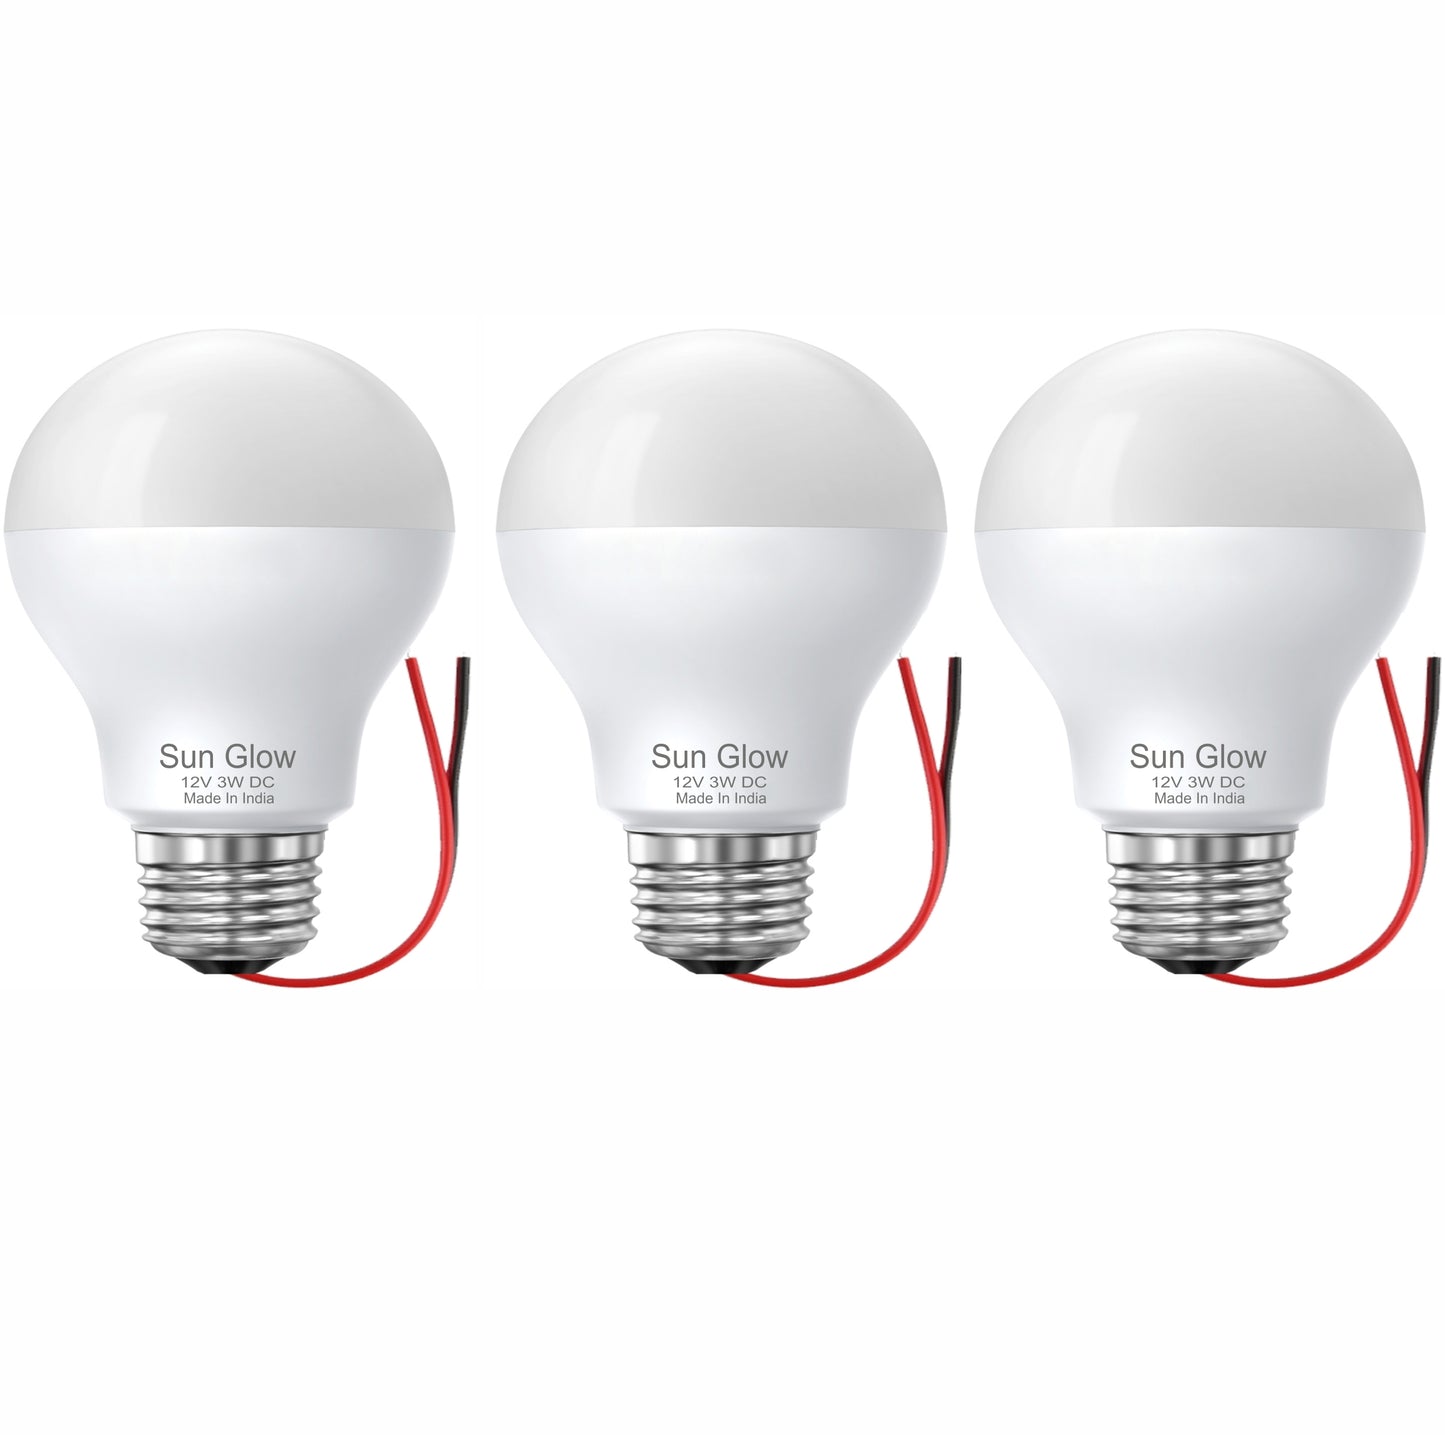 Sun Glow 12Volt 3W DC LED Bulb( Pack of 3)